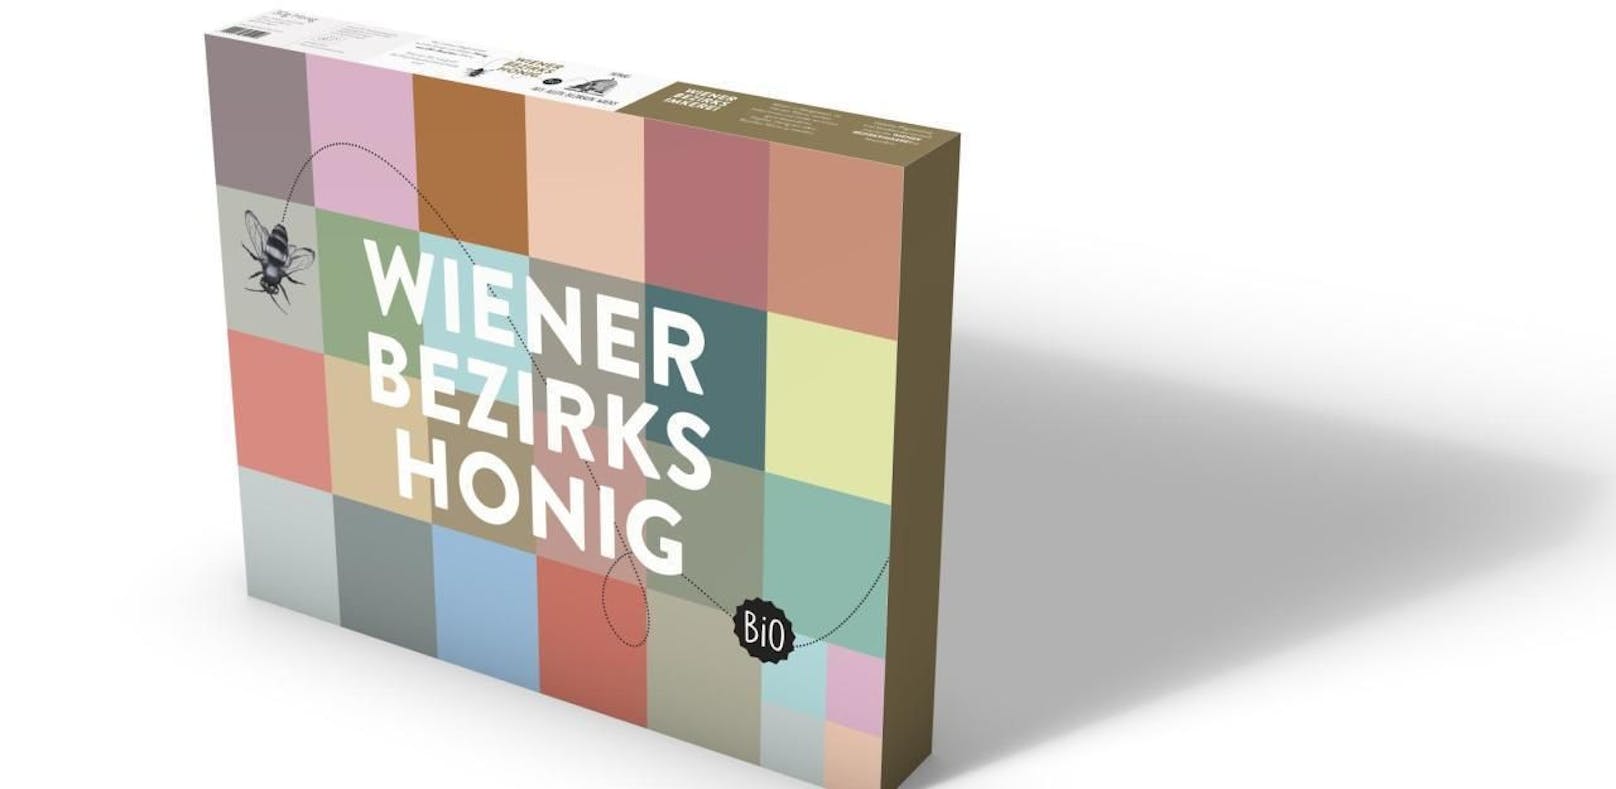 Die Wiener Bezirksimkerei verlost 3 x 1 Degustationsboxen mit je insgesamt 23 Honigdosen aus jedem Wiener Bezirk!